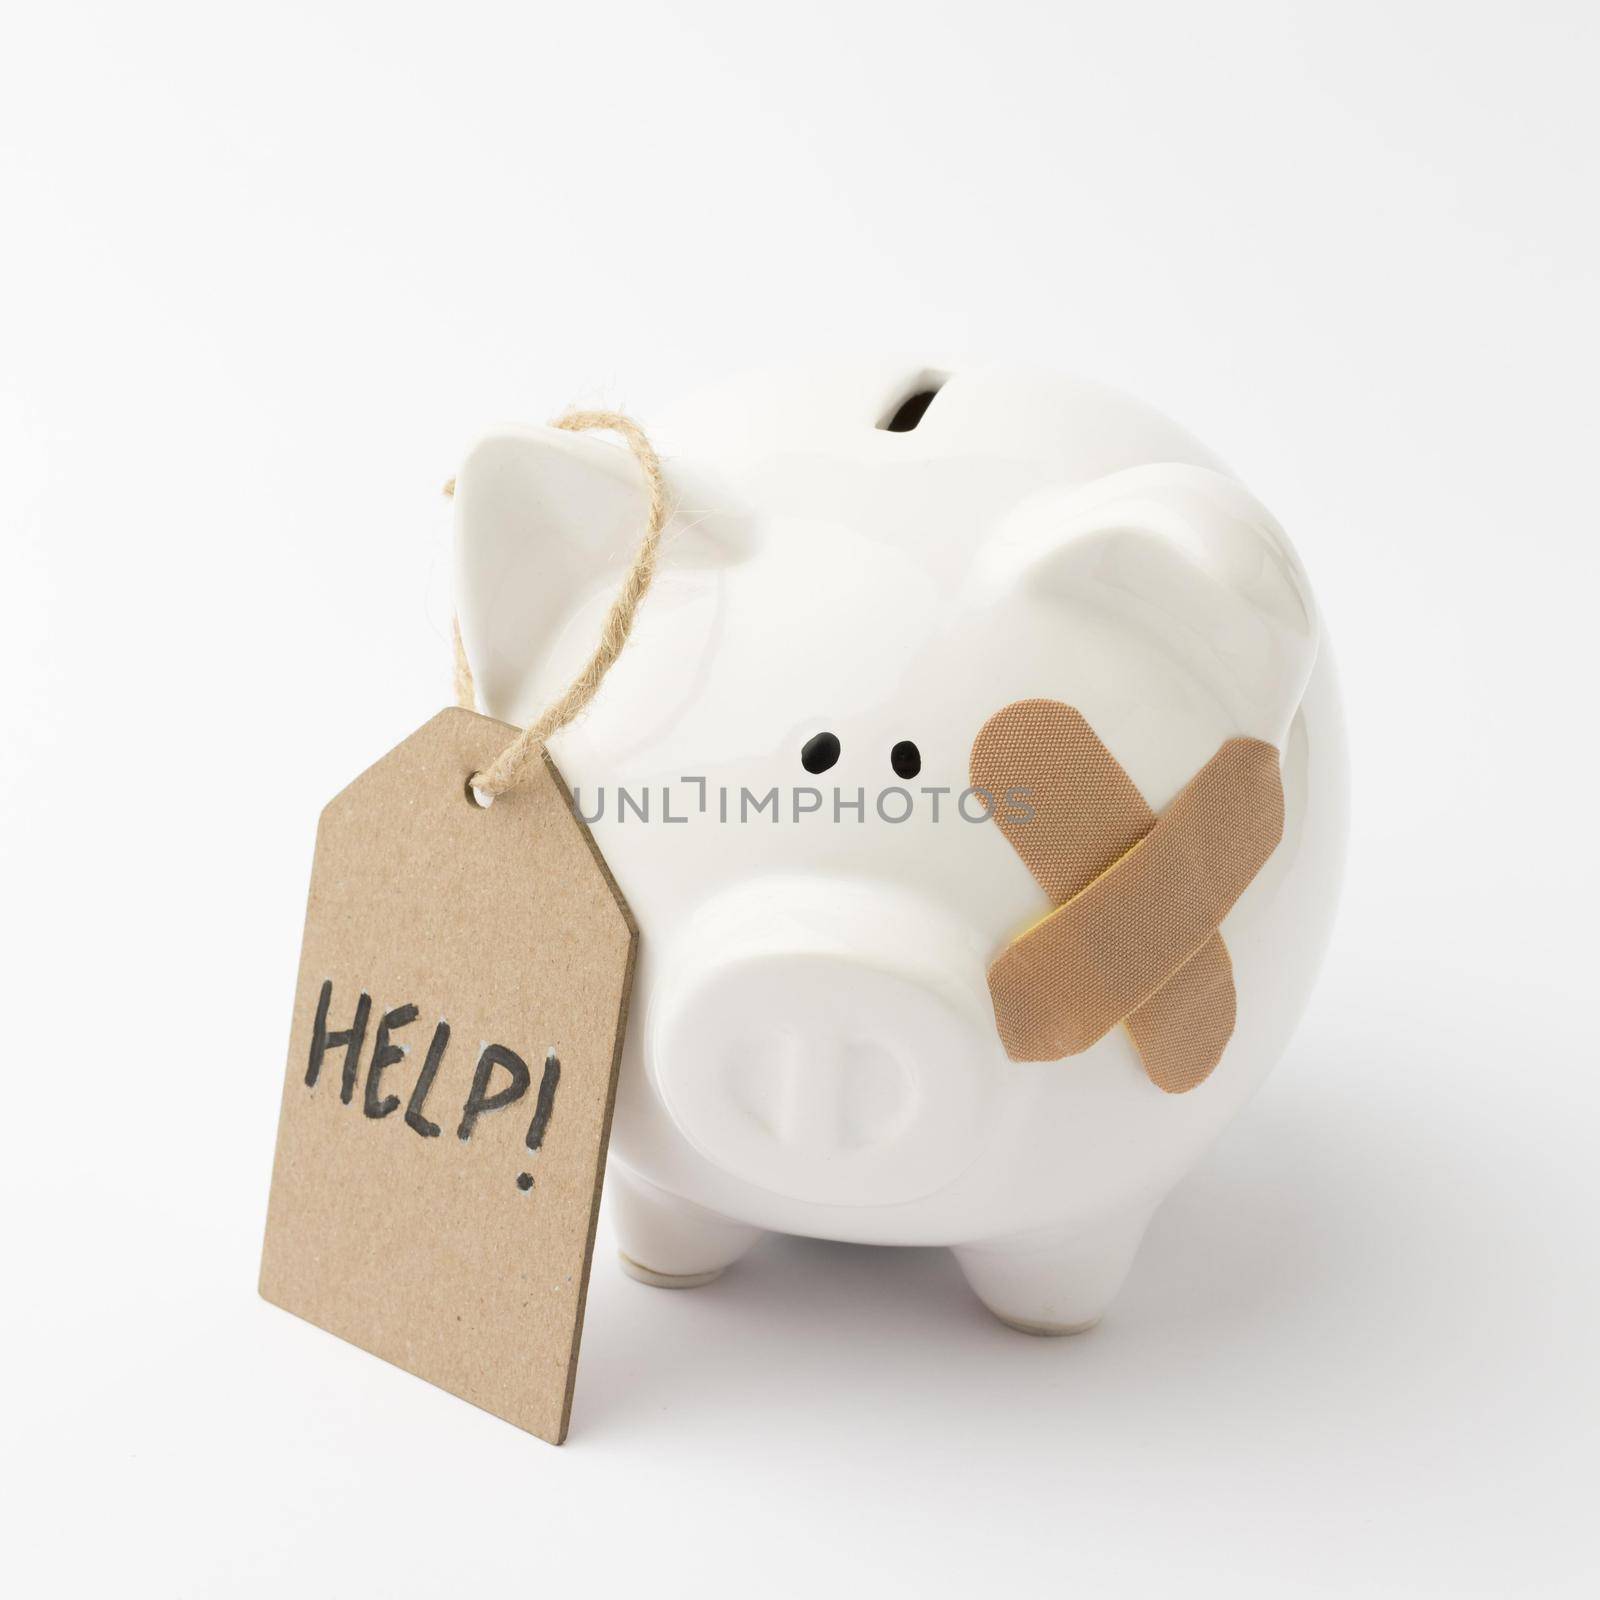 broken piggy bank asking help by Zahard